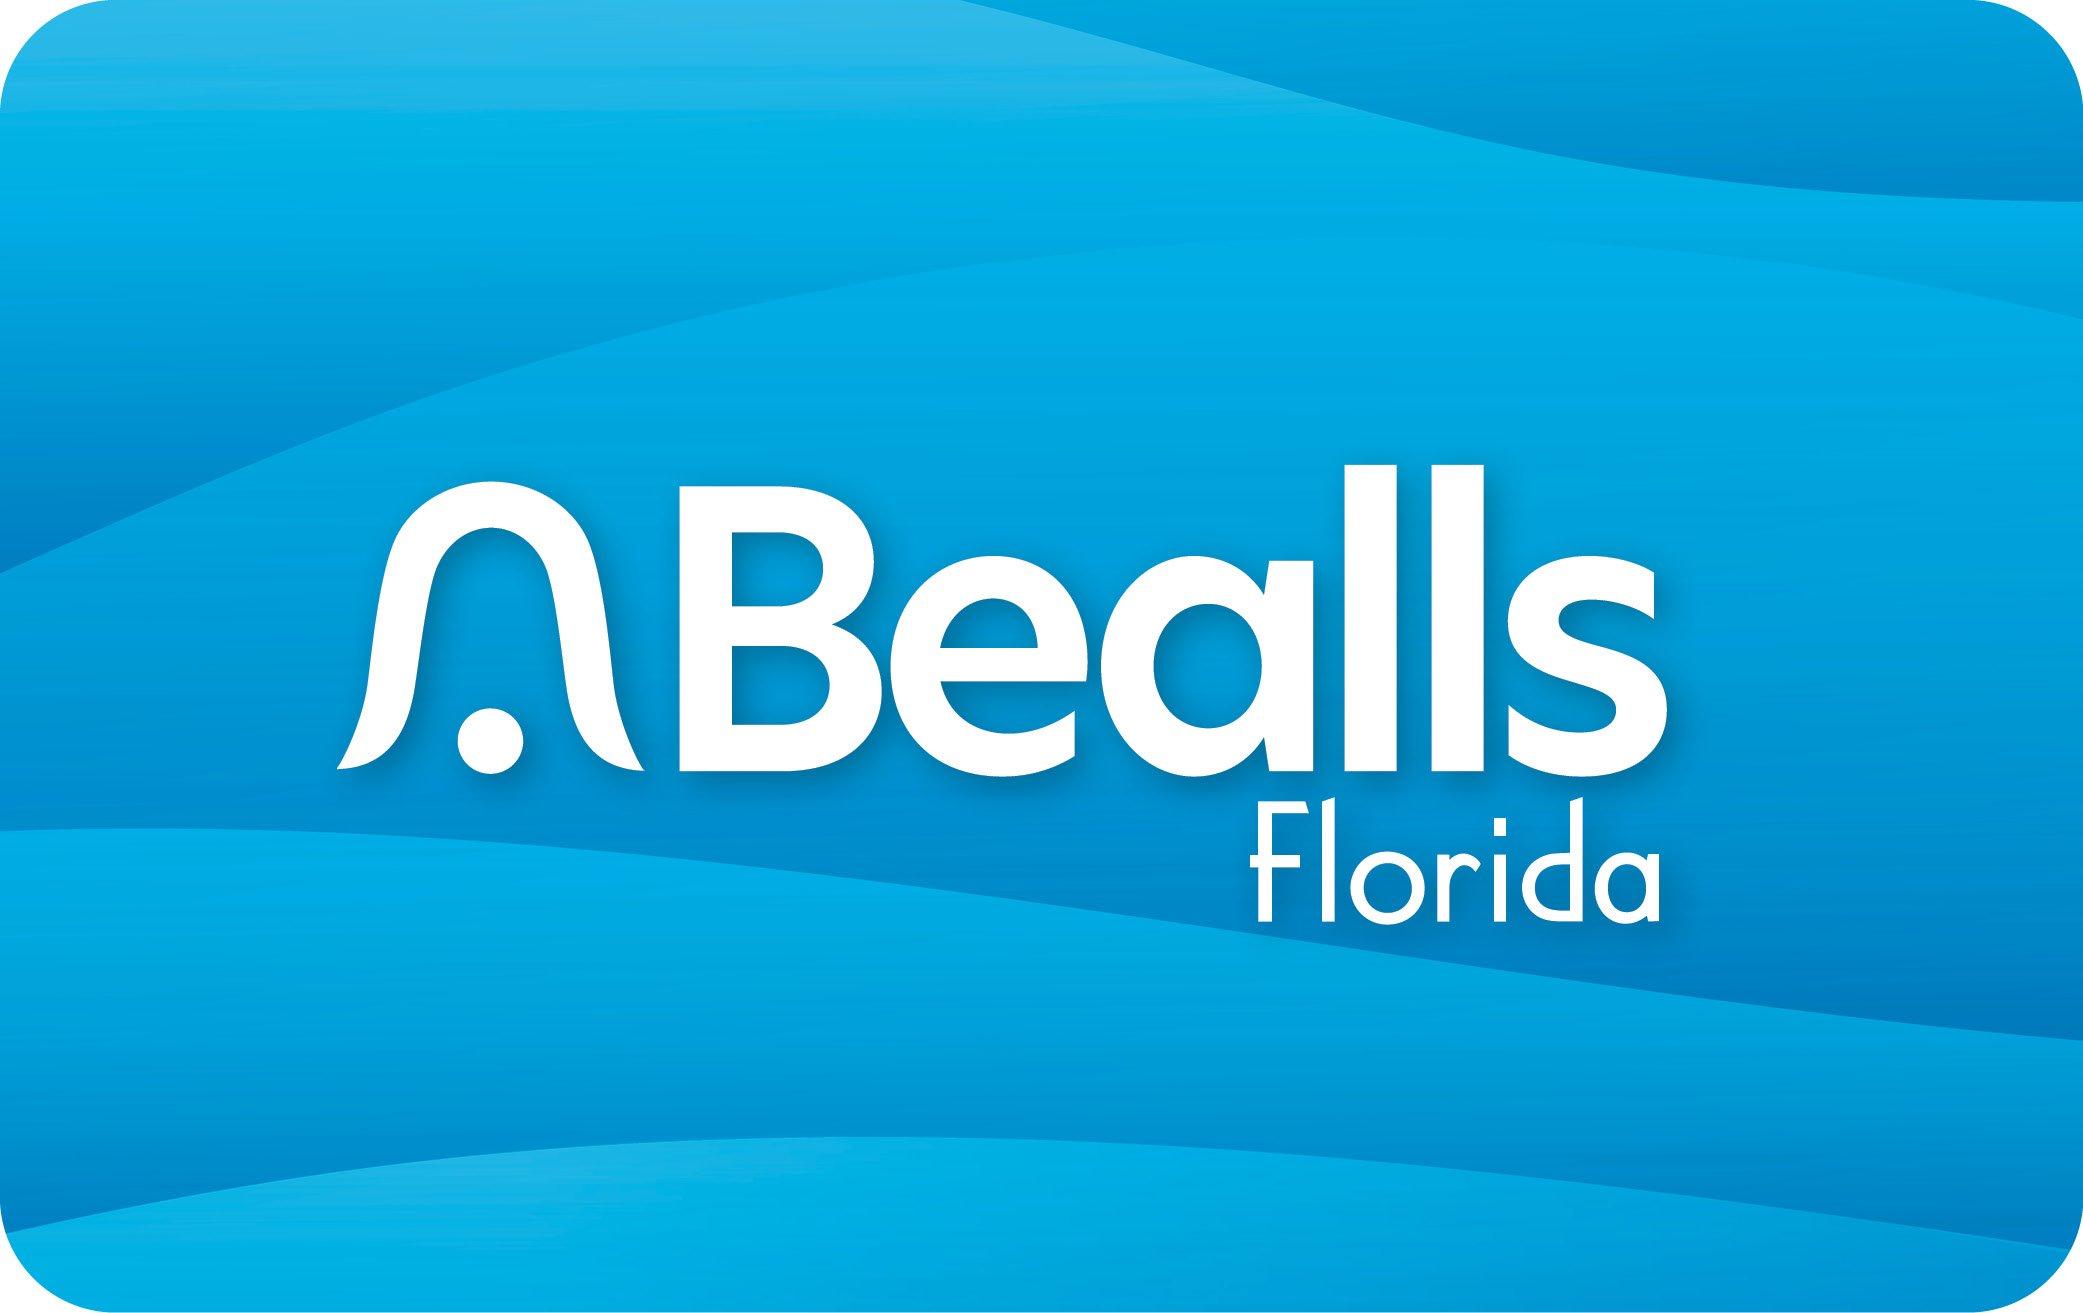 Bealls Florida Blue